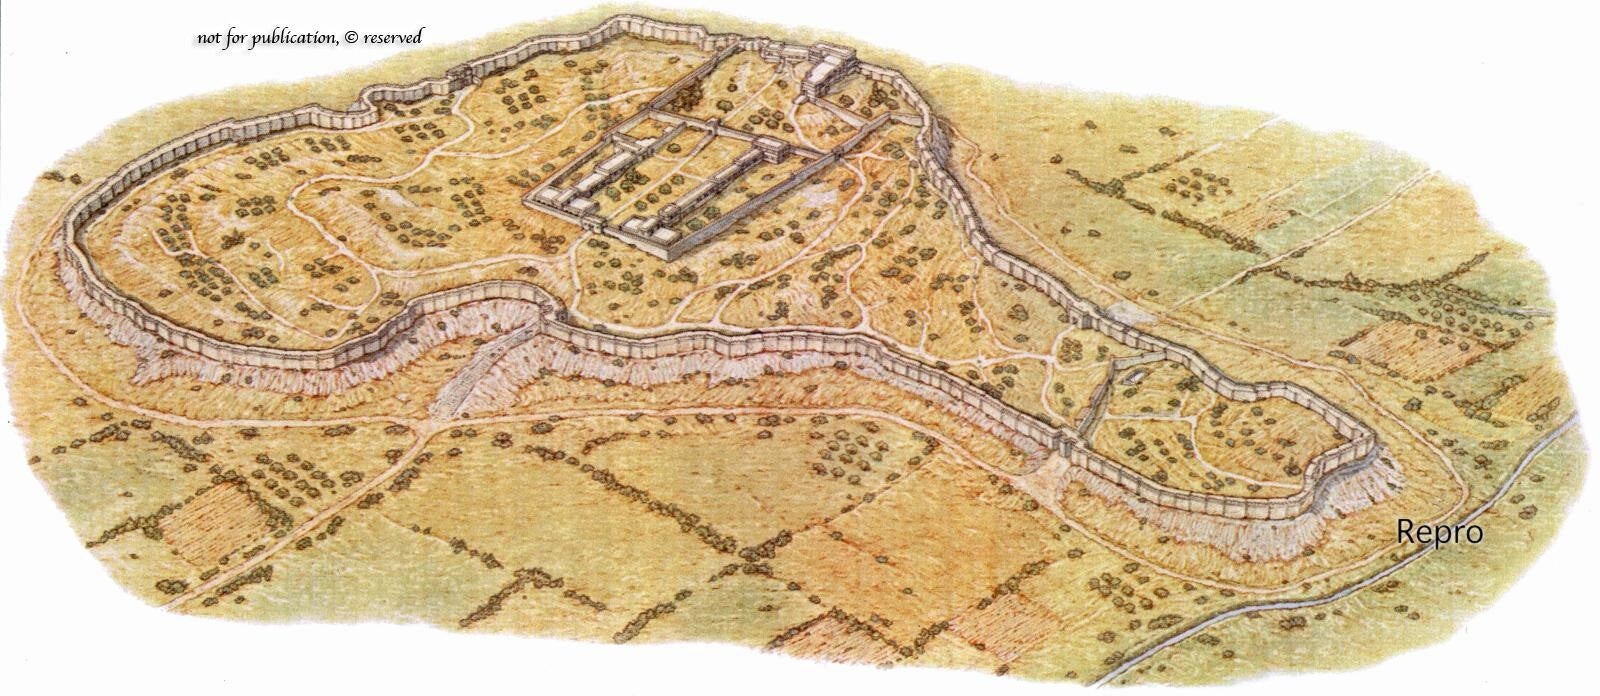 Αποκαλύφθηκε μυκηναϊκή Ακρόπολη στην Κωπαΐδα – Επτά φορές μεγαλύτερη από αυτή των Μυκηνών (εικόνες)